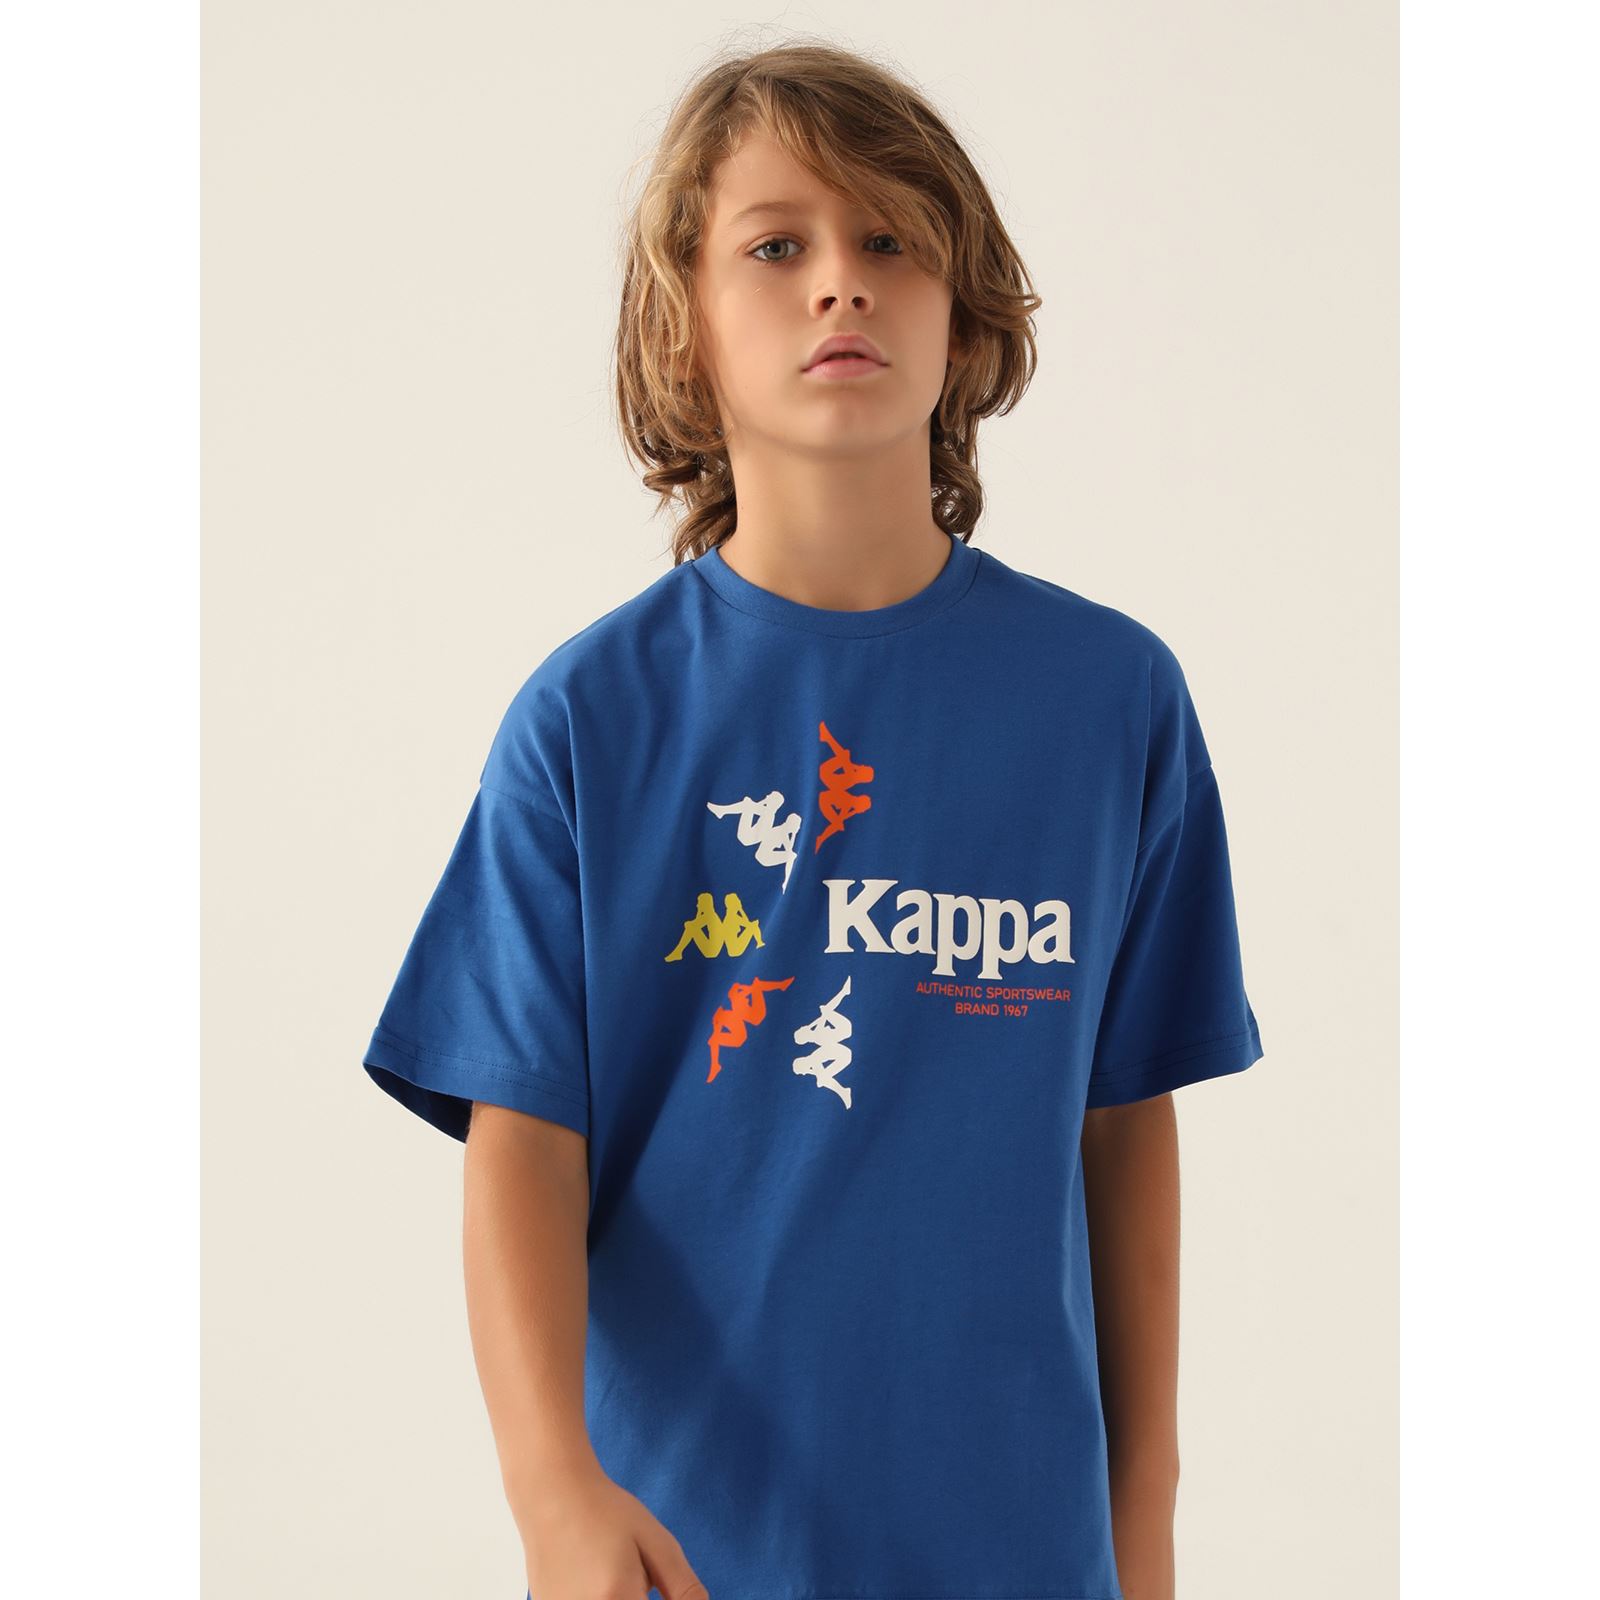 Kappa Erkek Çocuk Tişört 5-15 Yaş Mavi